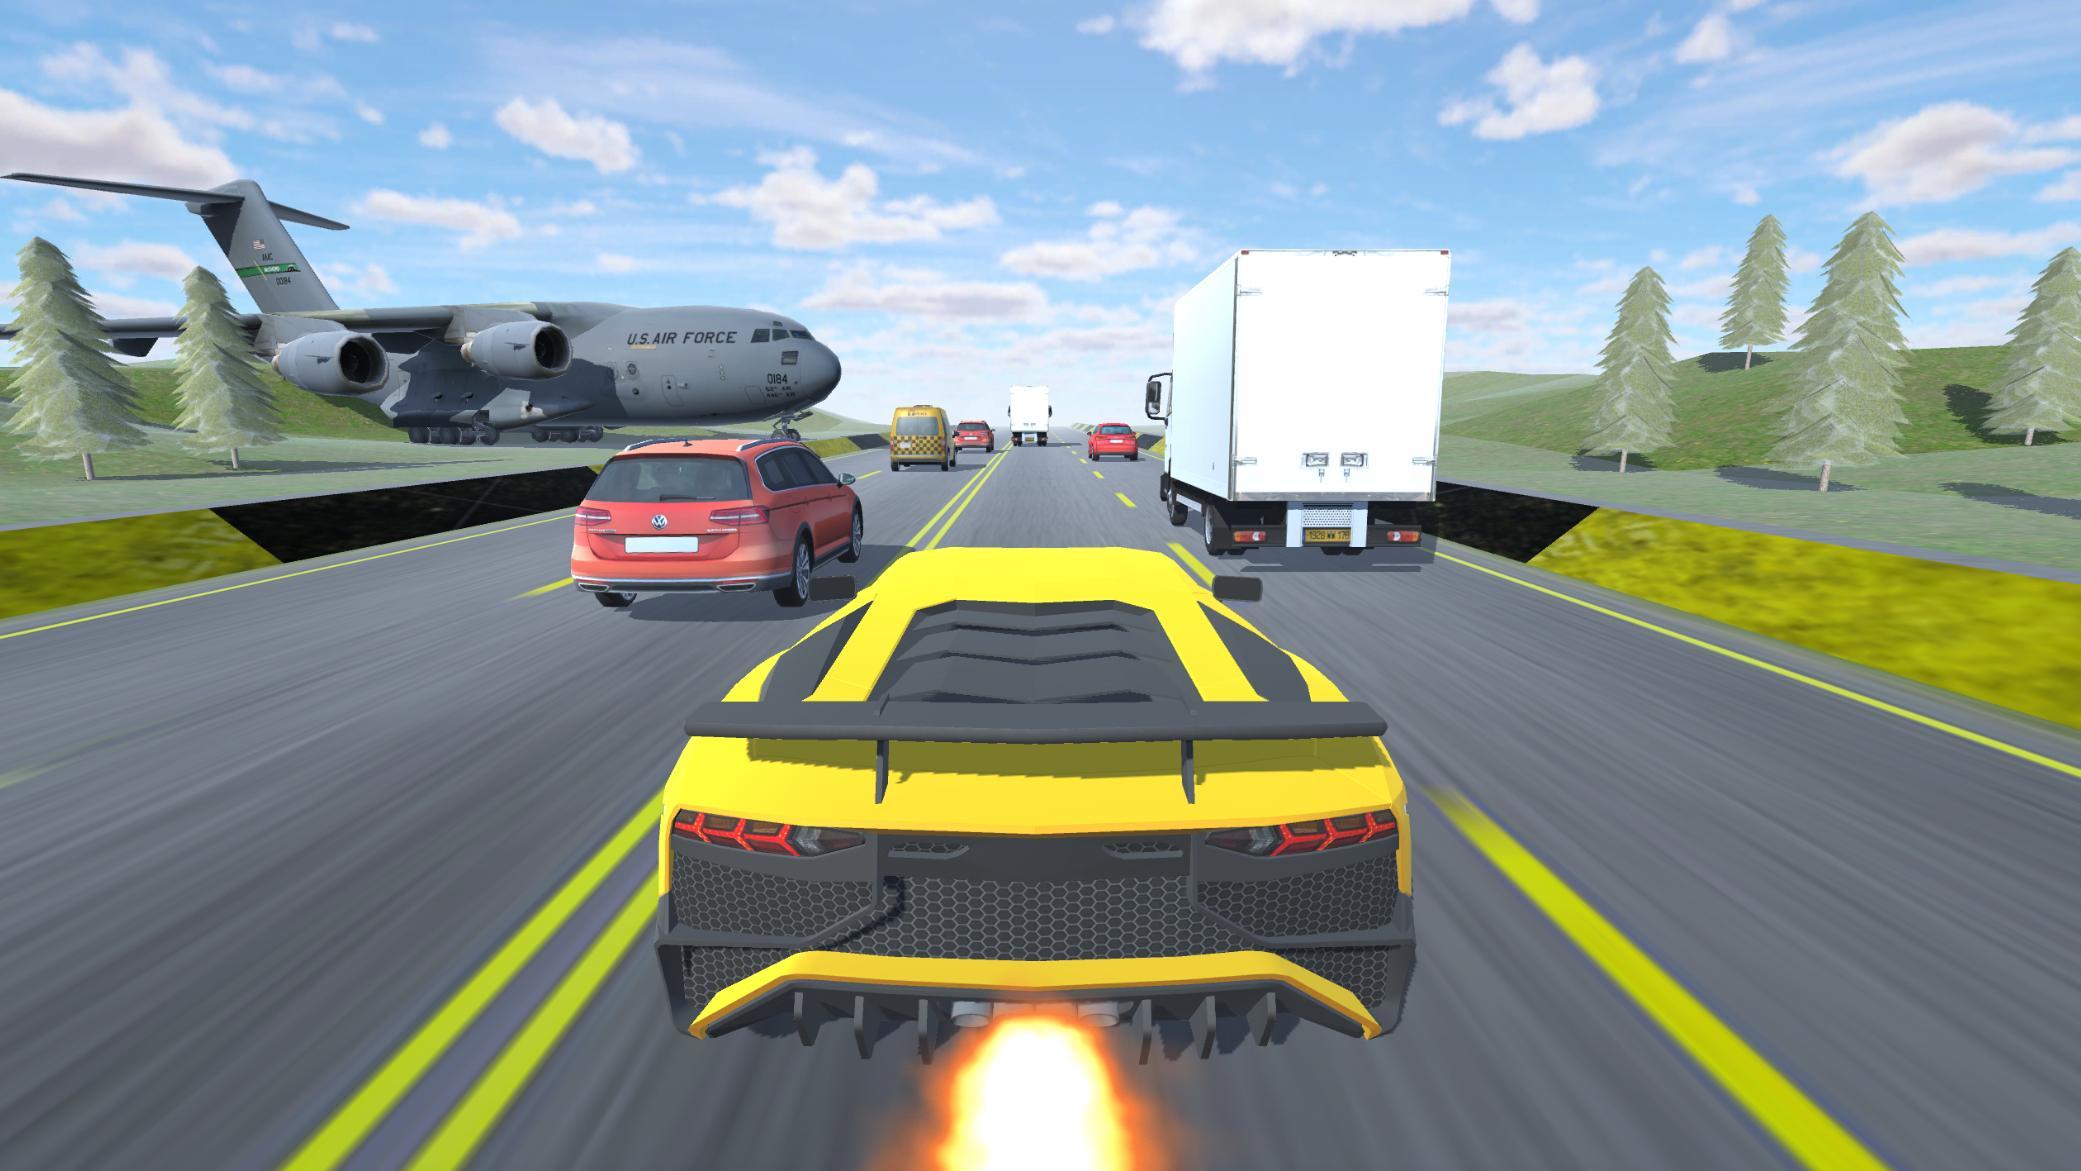 Screenshot of Traffic Car Driving Simulator